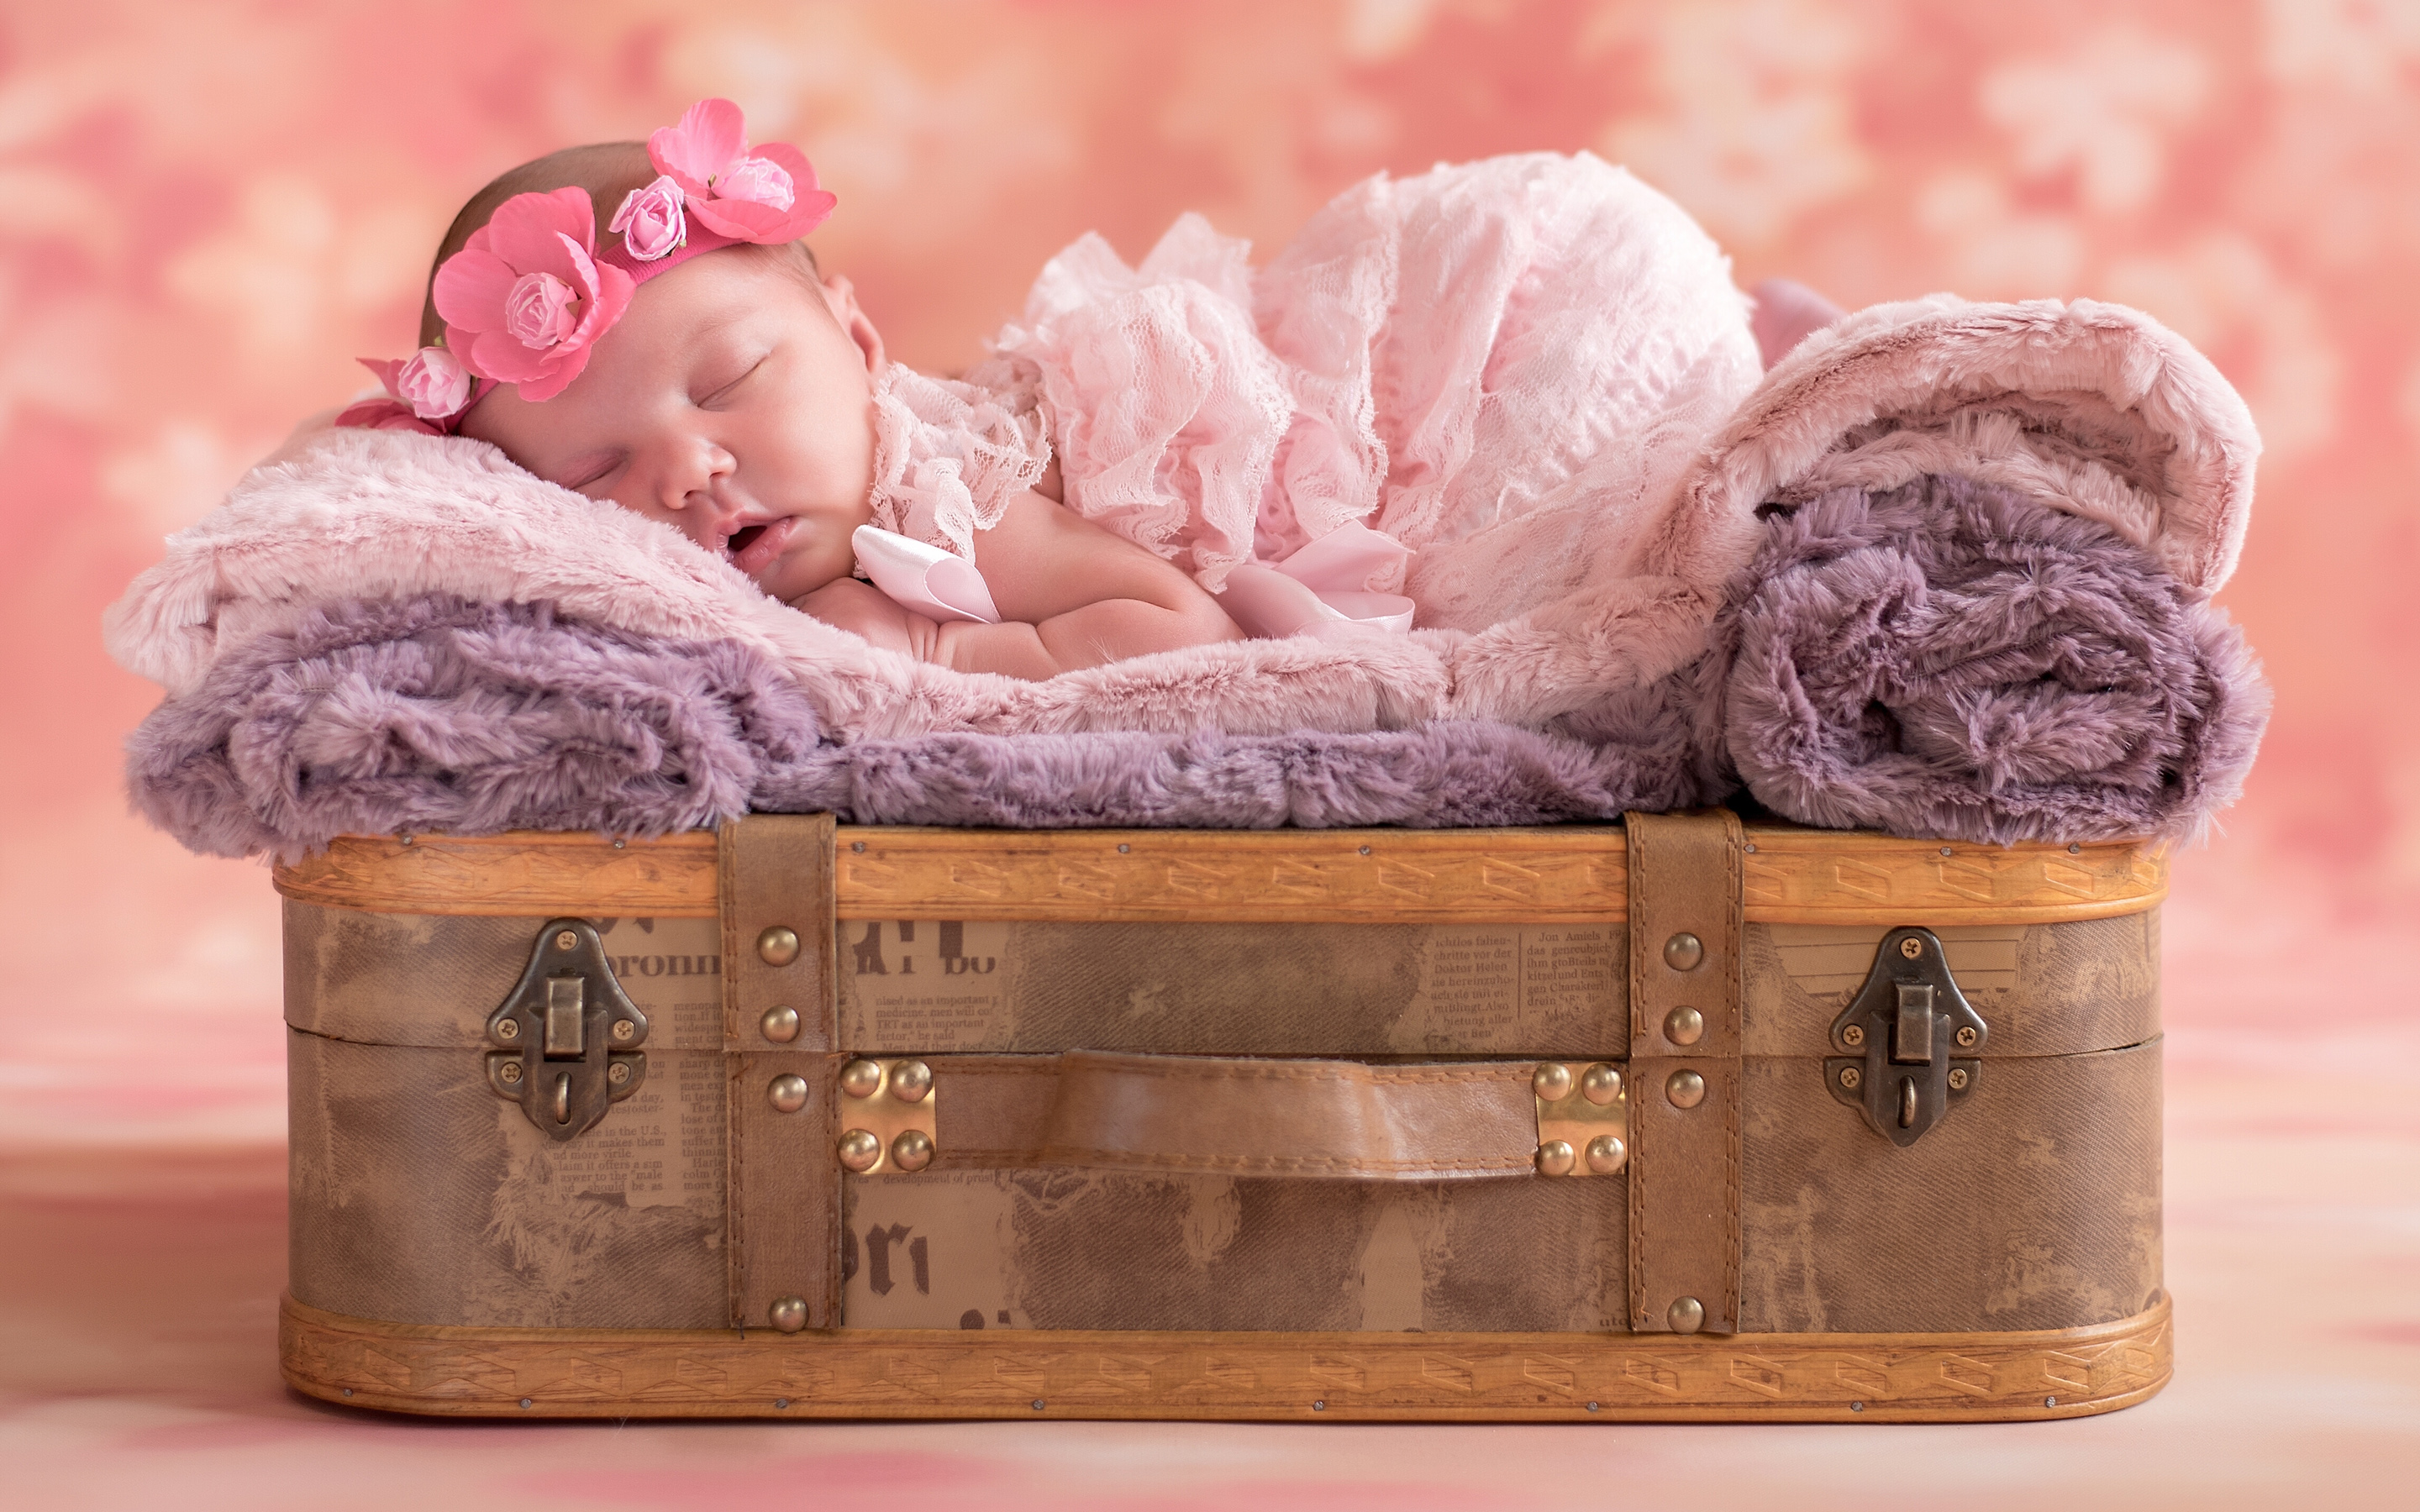 Cute Baby Sleep4157516342 - Cute Baby Sleep - Sleep, Infant, Cute, Baby